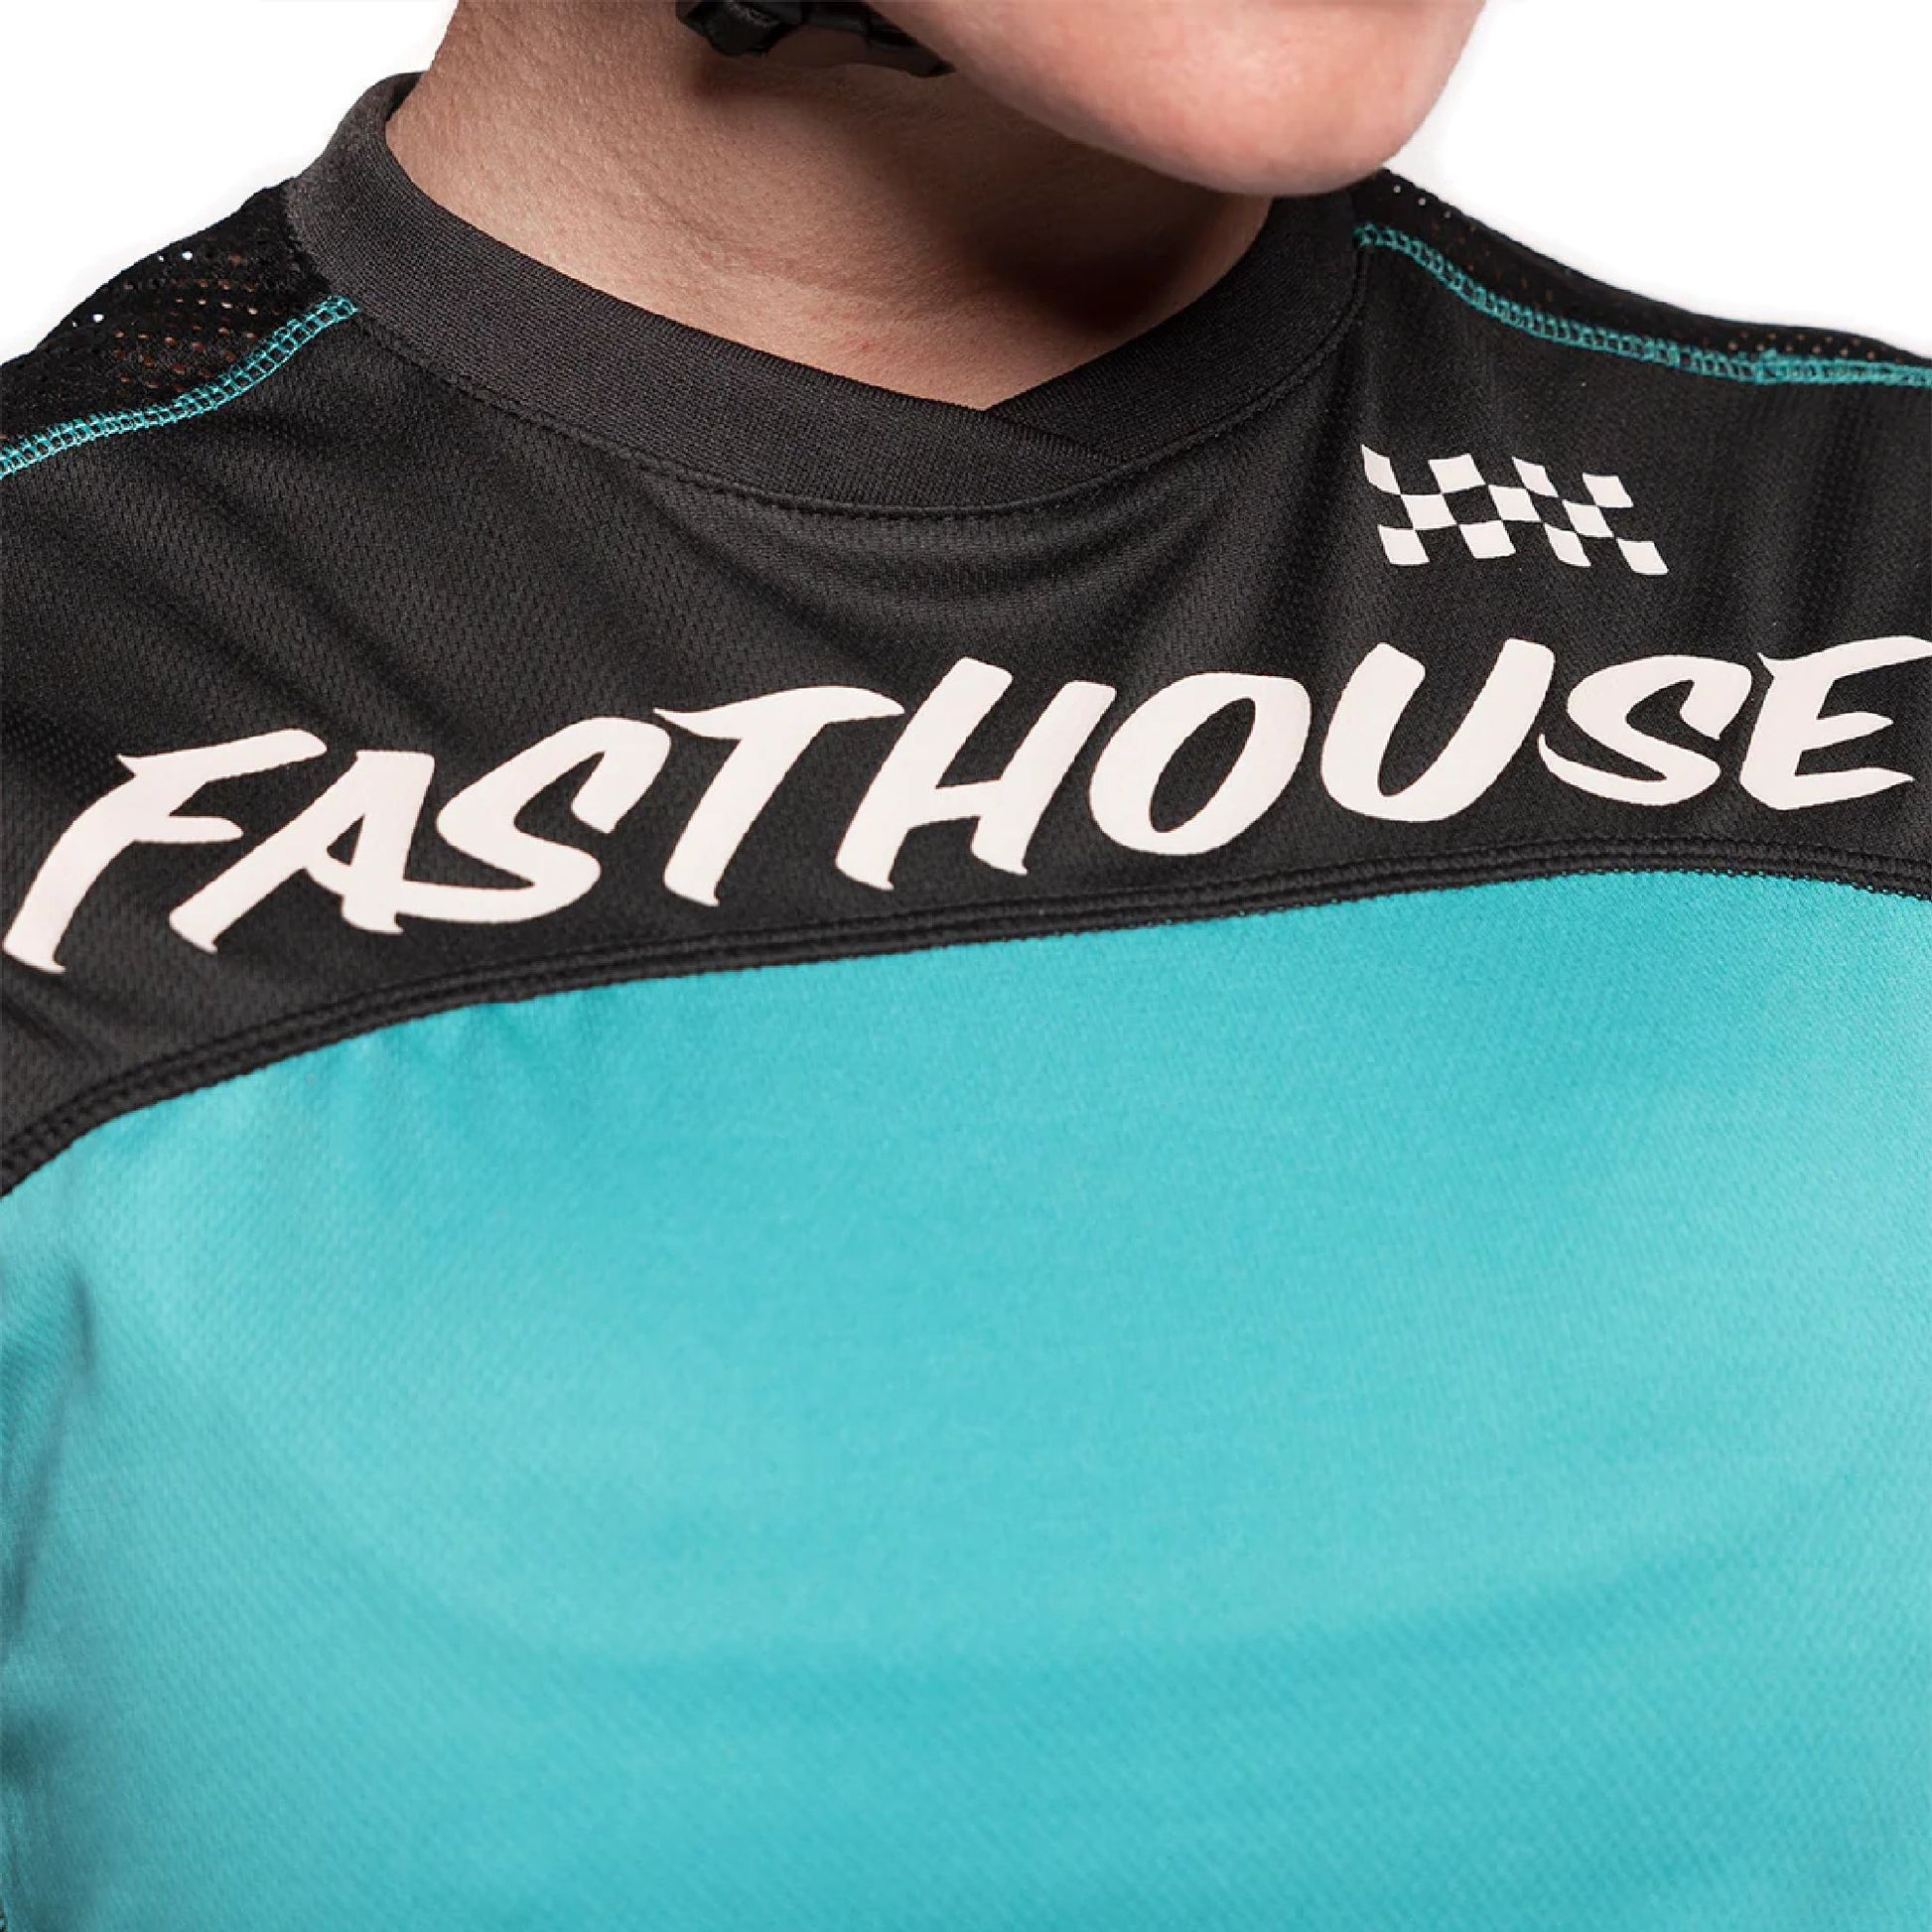 Fasthouse Women's Mercury Classic LS Jersey Black Teal - Fasthouse Bike Jerseys